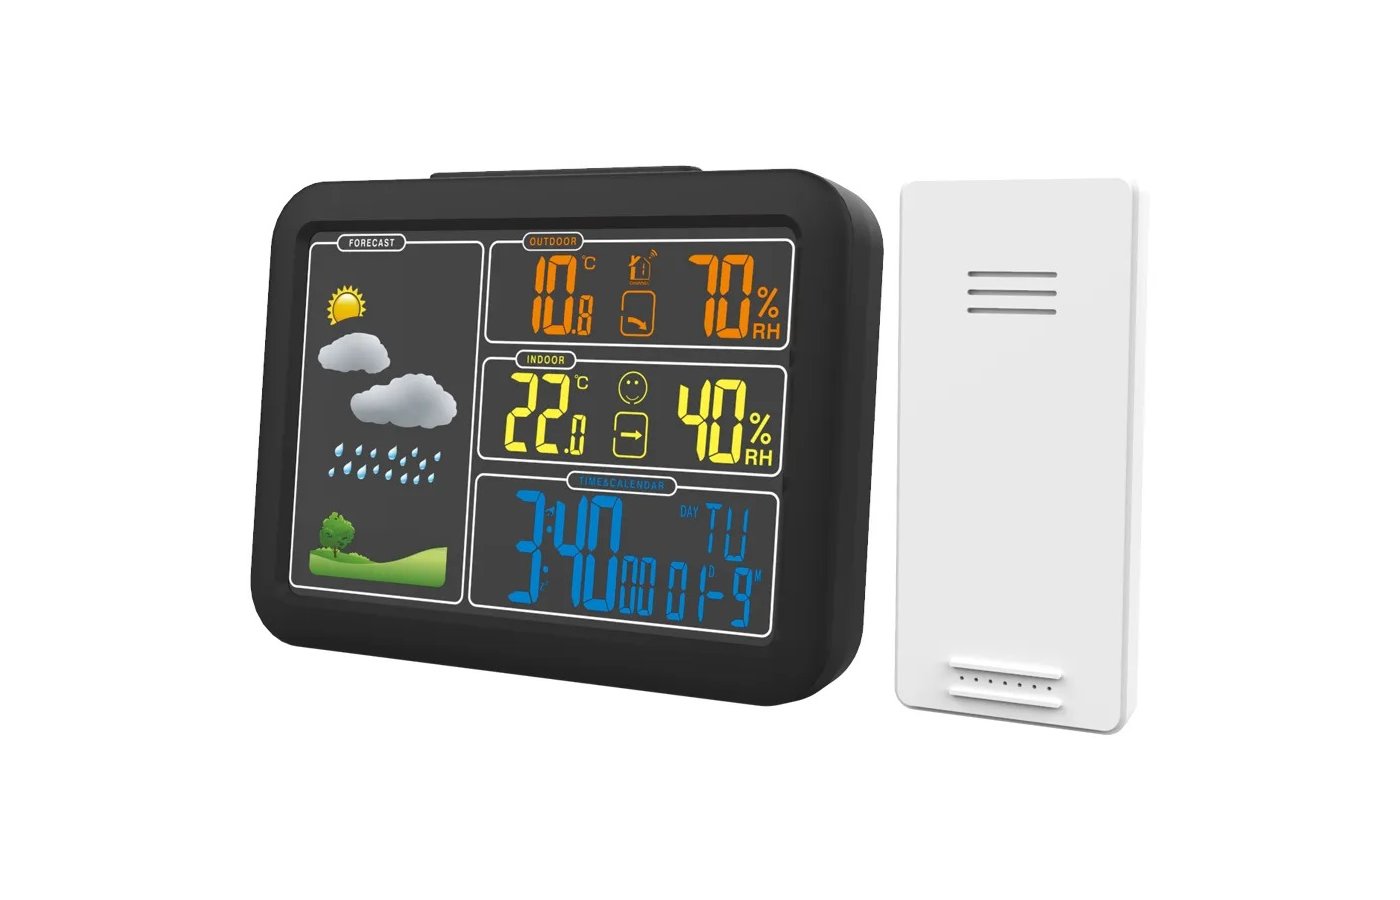 Метеостанция Ritmix CAT-340 Black термометр, гигрометр, цветной LED дисплей, часы, будильник